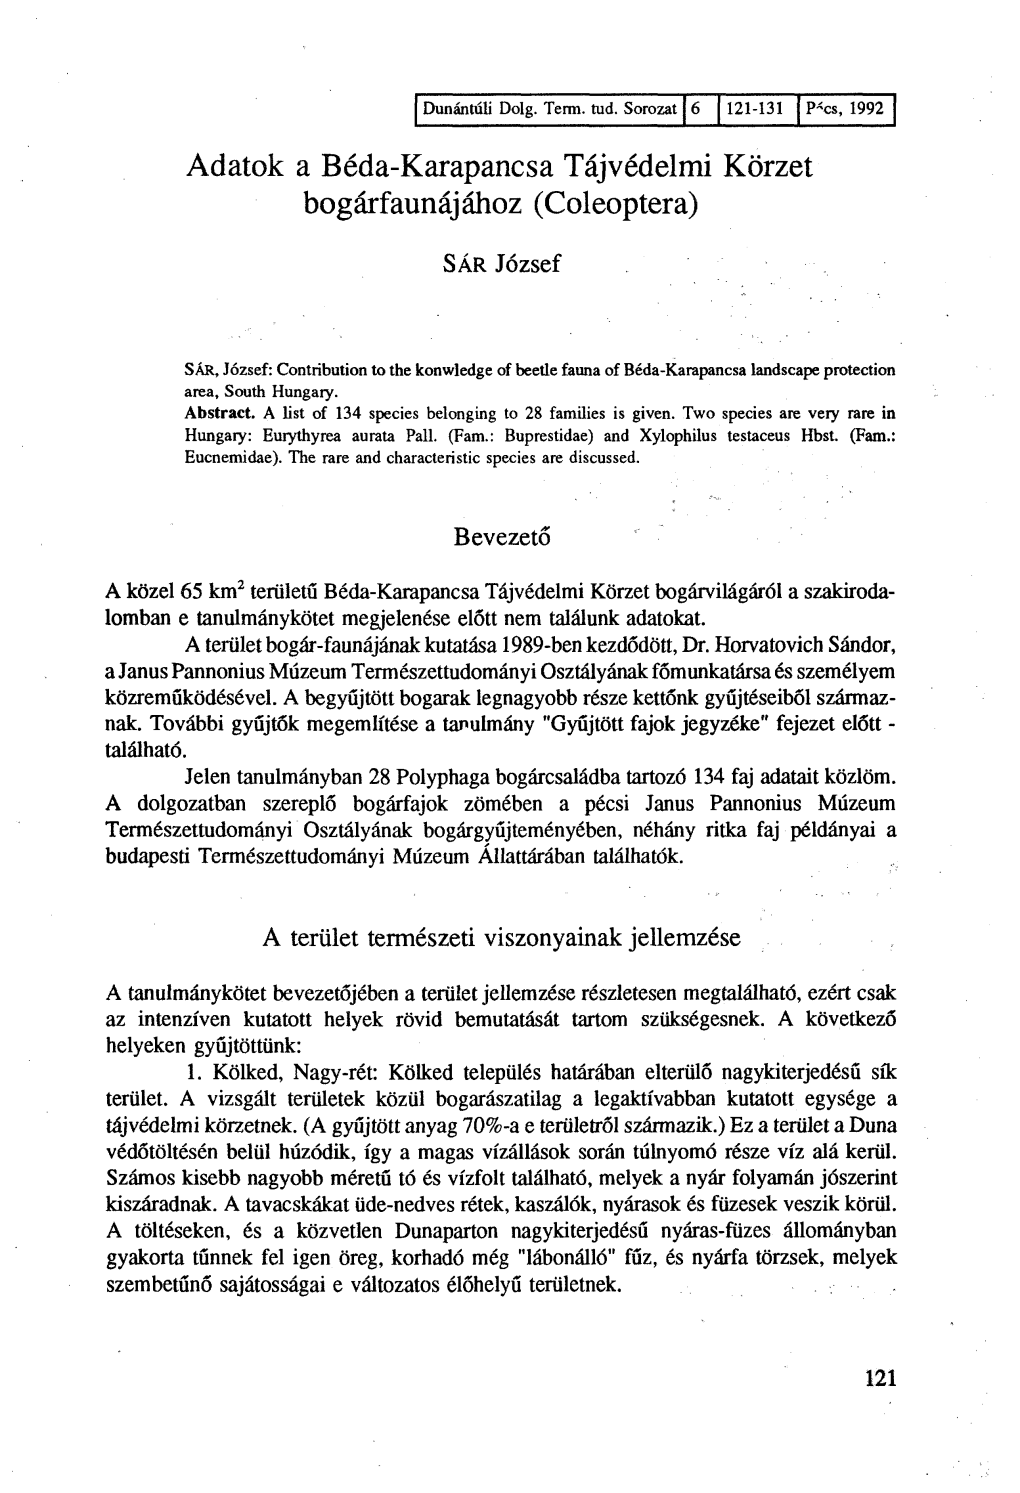 A Béda-Karapancsa Tájvédelmi Körzet Élővilága (Dunántúli Dolgozatok Természettudományi Sorozat 6., 1992)